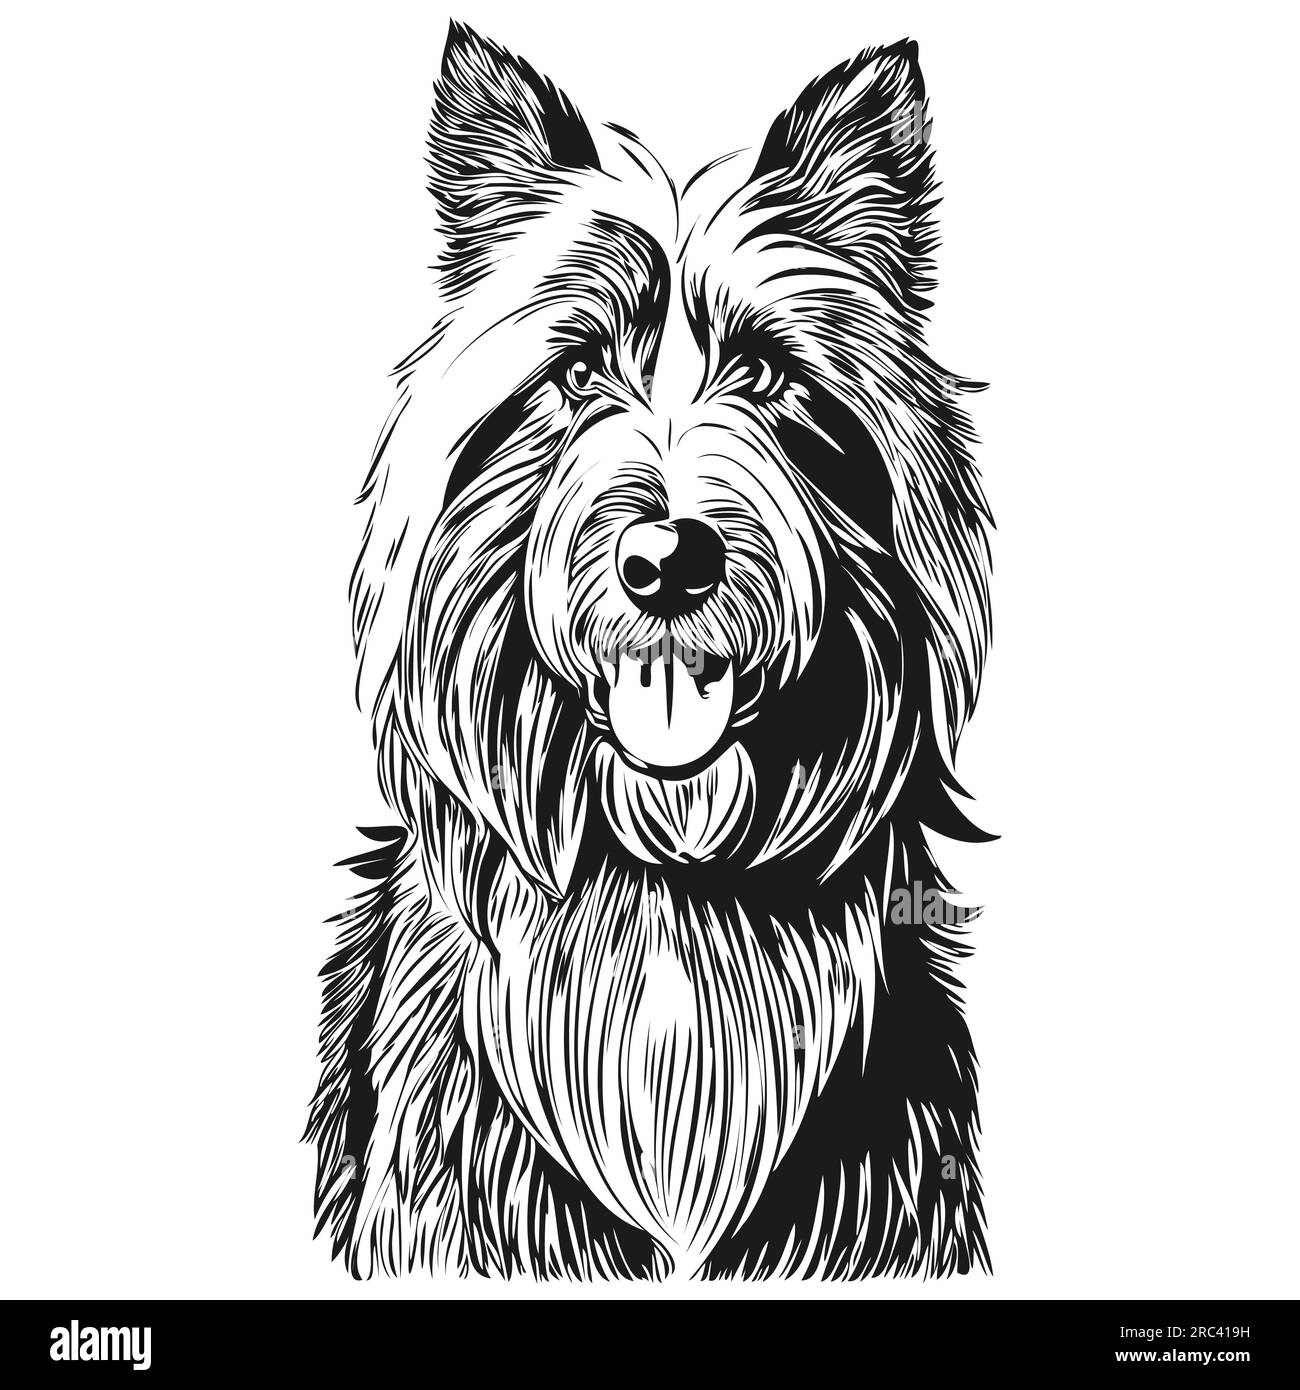 Dessin au trait de race de chien Collie barbu, clip art animal dessin à la main vecteur noir et blanc prêt t-shirt imprimé Illustration de Vecteur